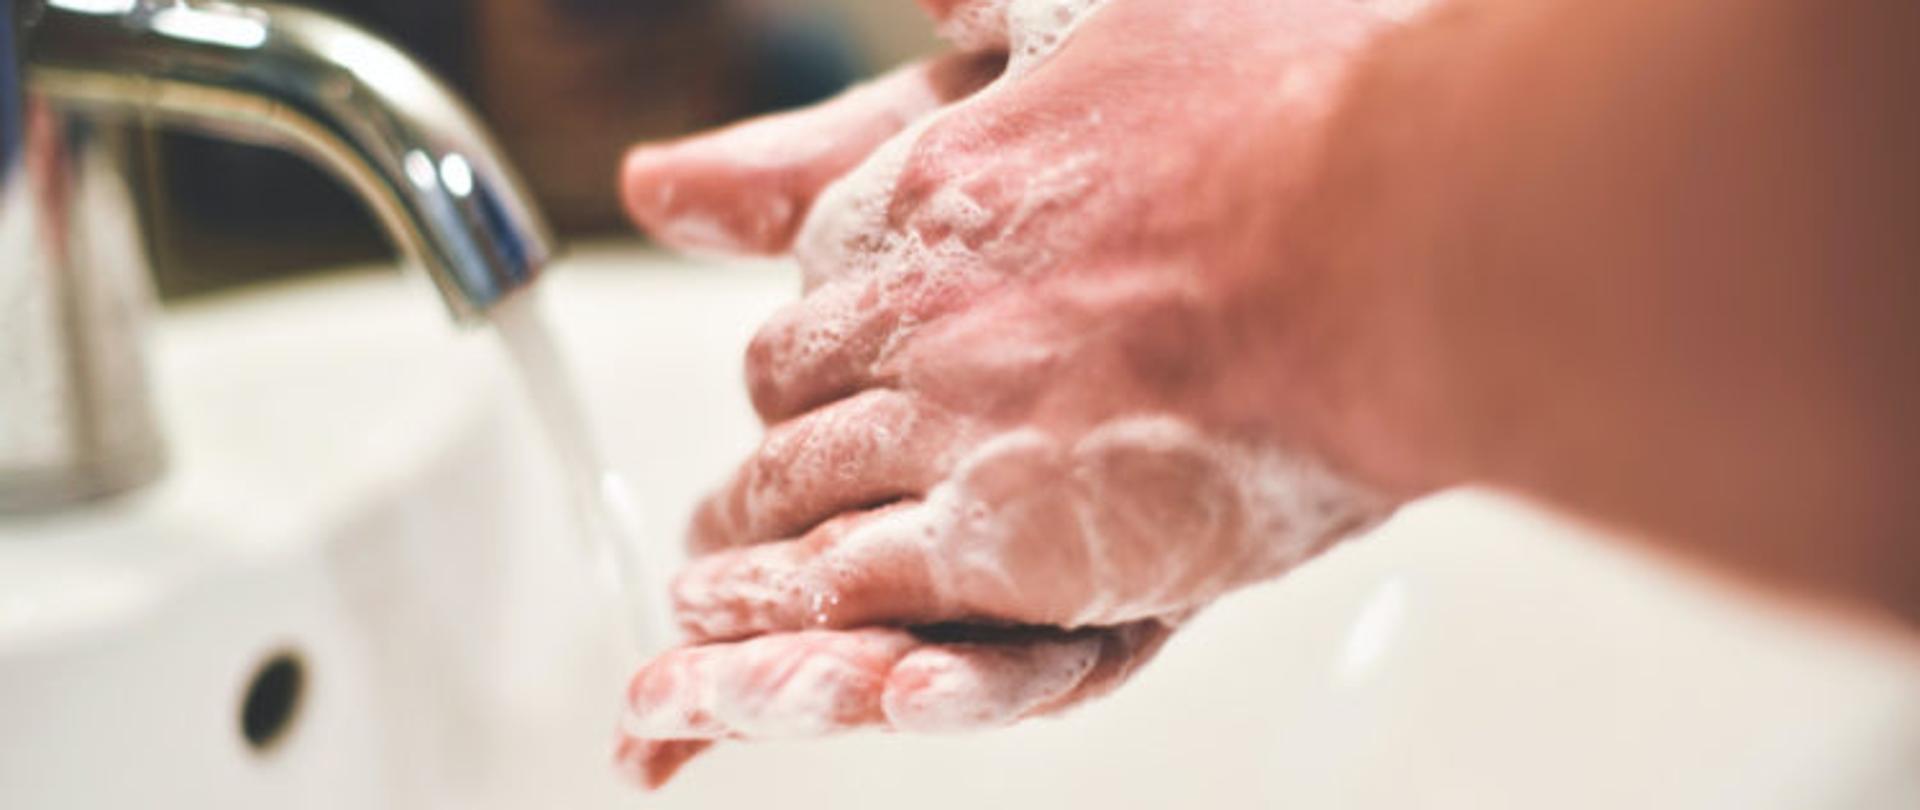 zdjęcie przestawiające mycie rąk, na głównym planie biała porcelanowa umywalka z srebrnym kranem, woda leci nieprzerwanym strumieniem. nad zlewem widoczne dłonie całe w pianie, jedna dłoń na drugiej, 